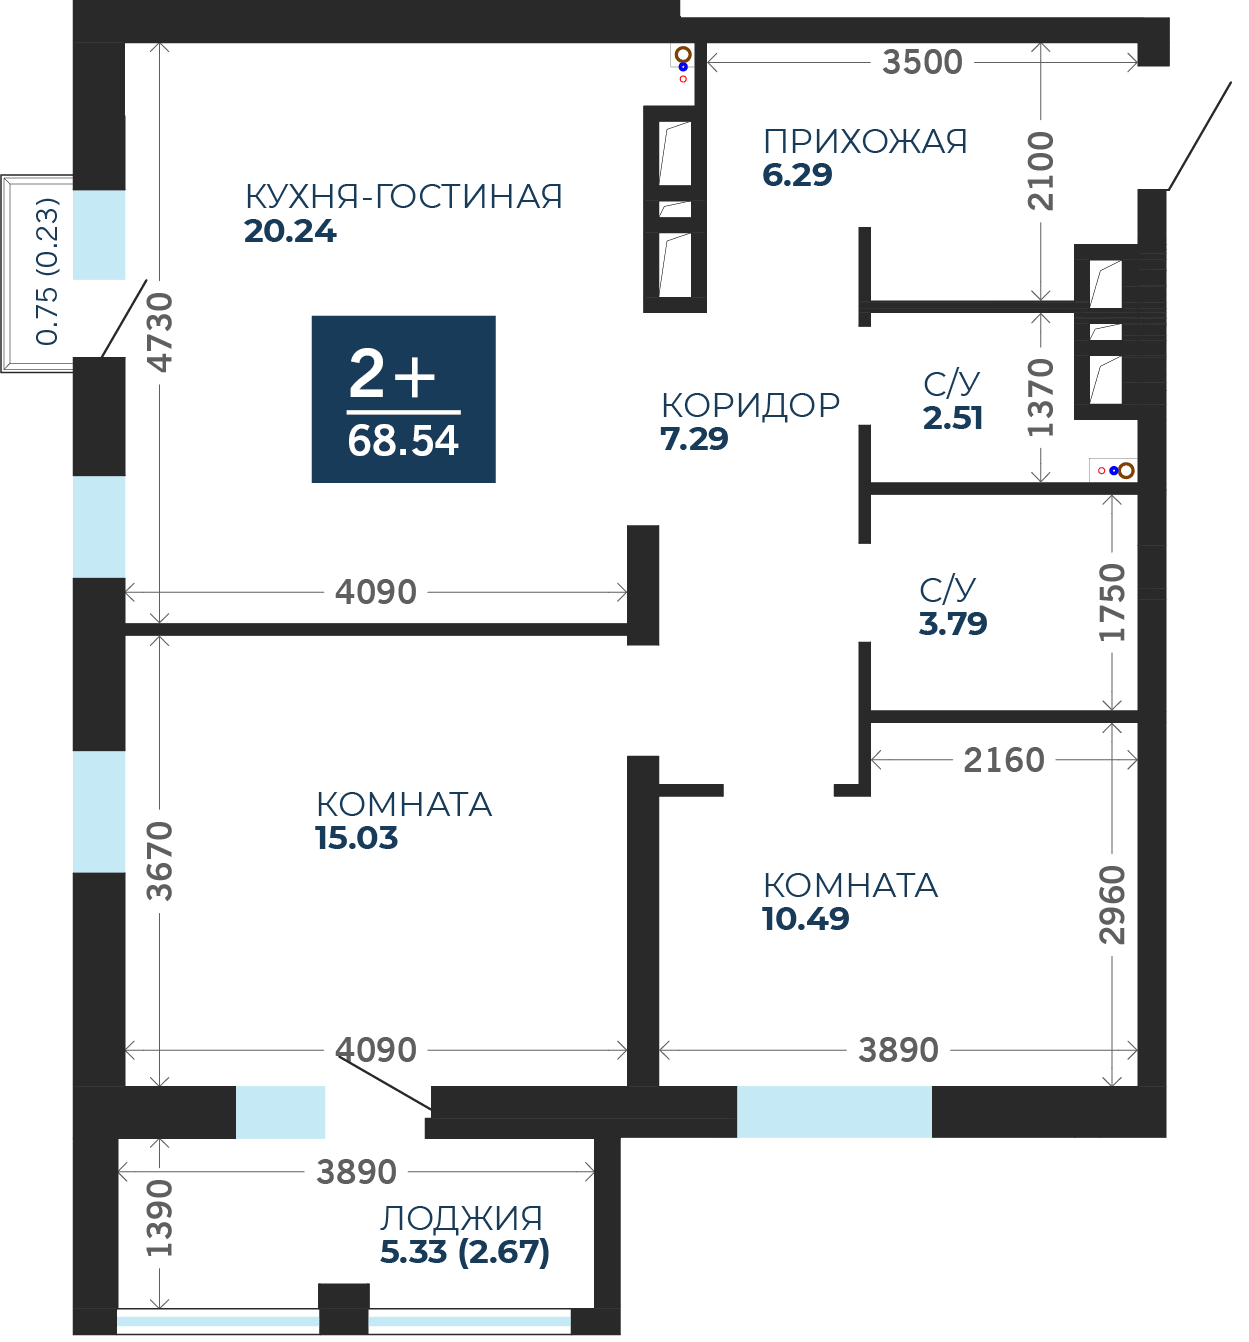 Квартира № 120, 2-комнатная, 68.54 кв. м, 16 этаж